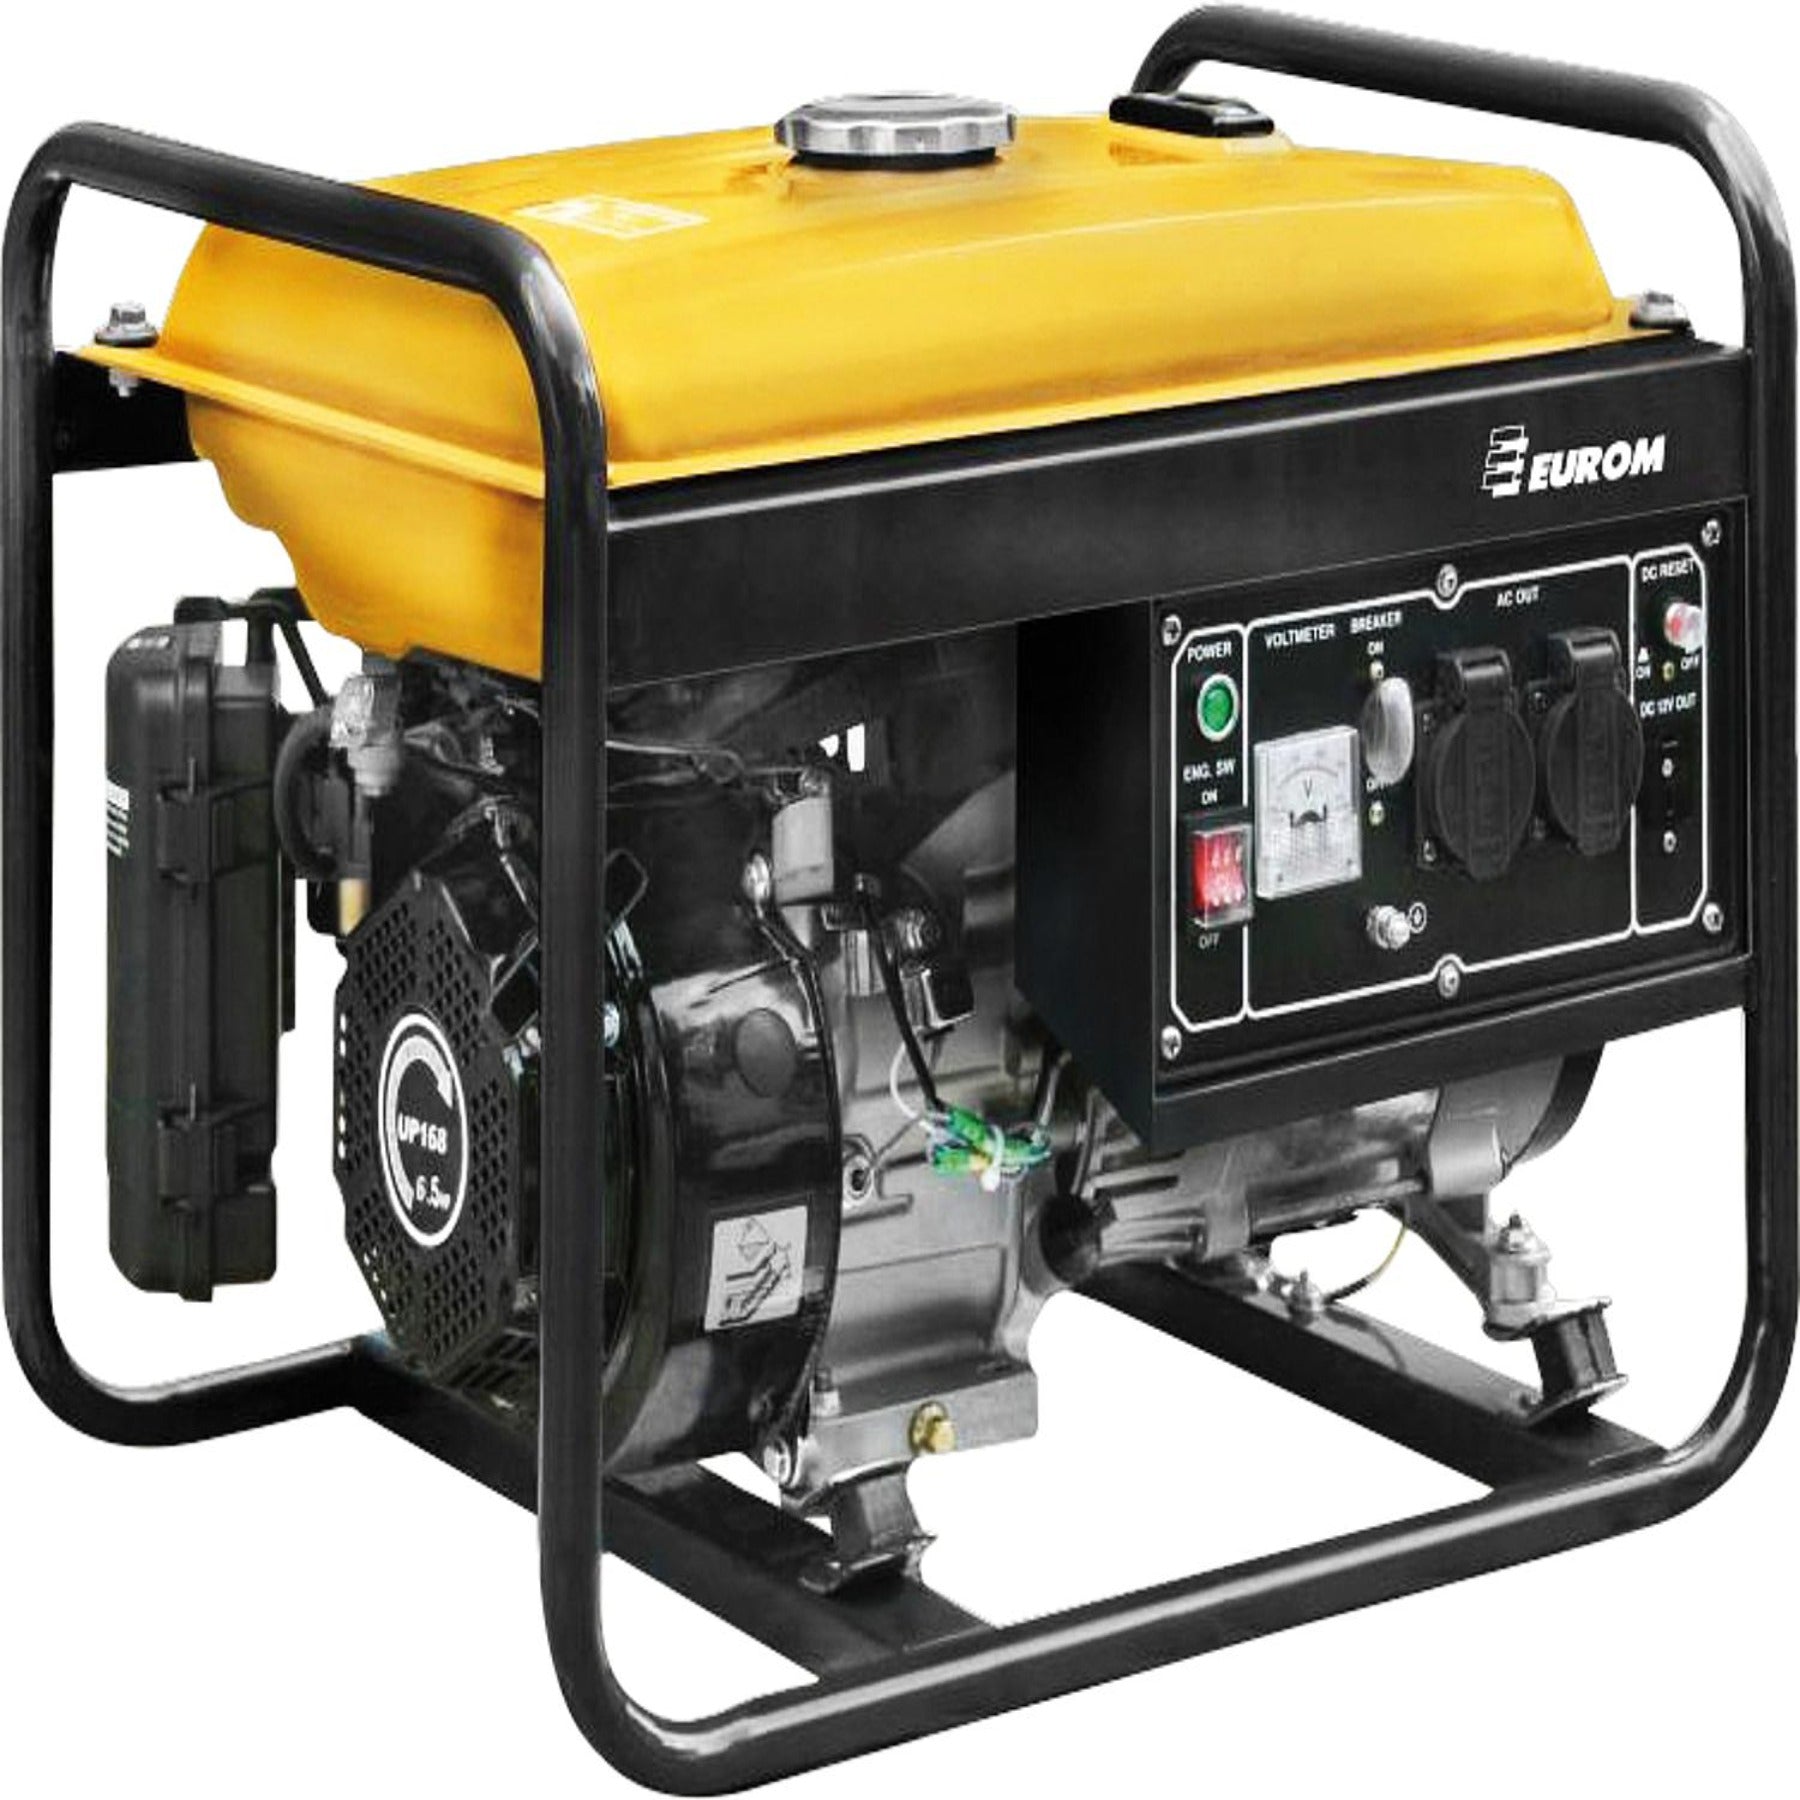 asdec life ® generator GE2501 2.2 kW, 15 liter tank